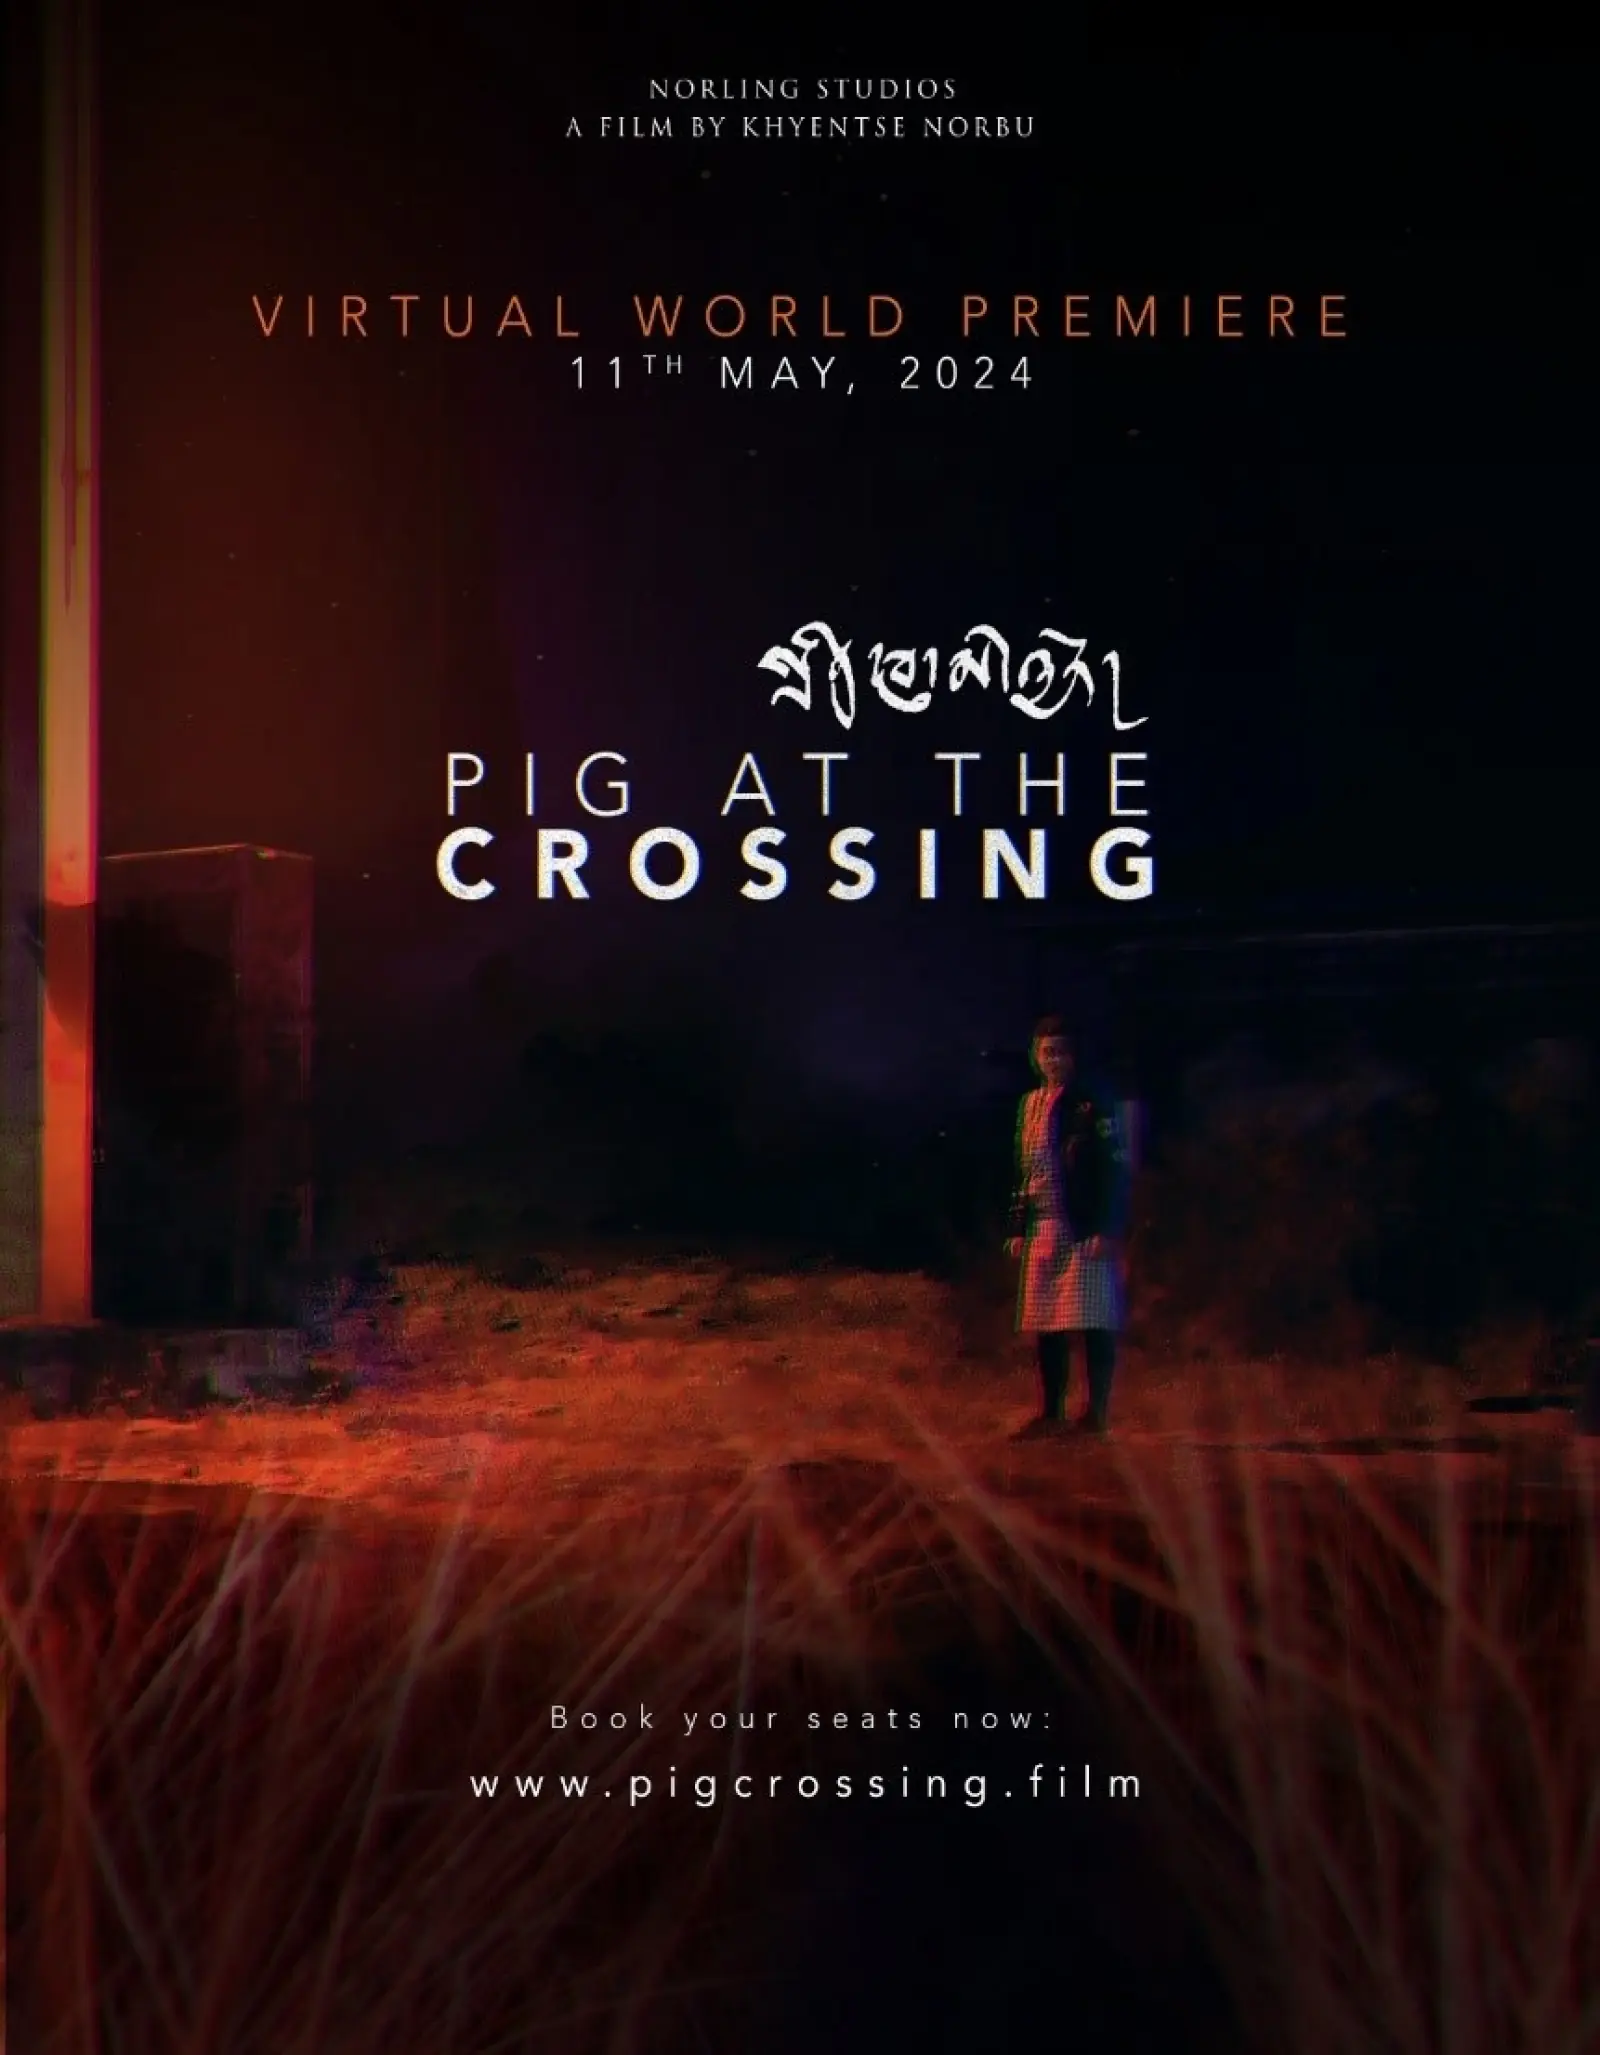 विख्यात अंतरराष्ट्रीय फिल्म निर्माता ख्यांत्से नोरबू की 'पिग एट द क्रॉसिंग' का विश्व स्तरीय वर्चुअल प्रीमियर 11 मई 2024 को